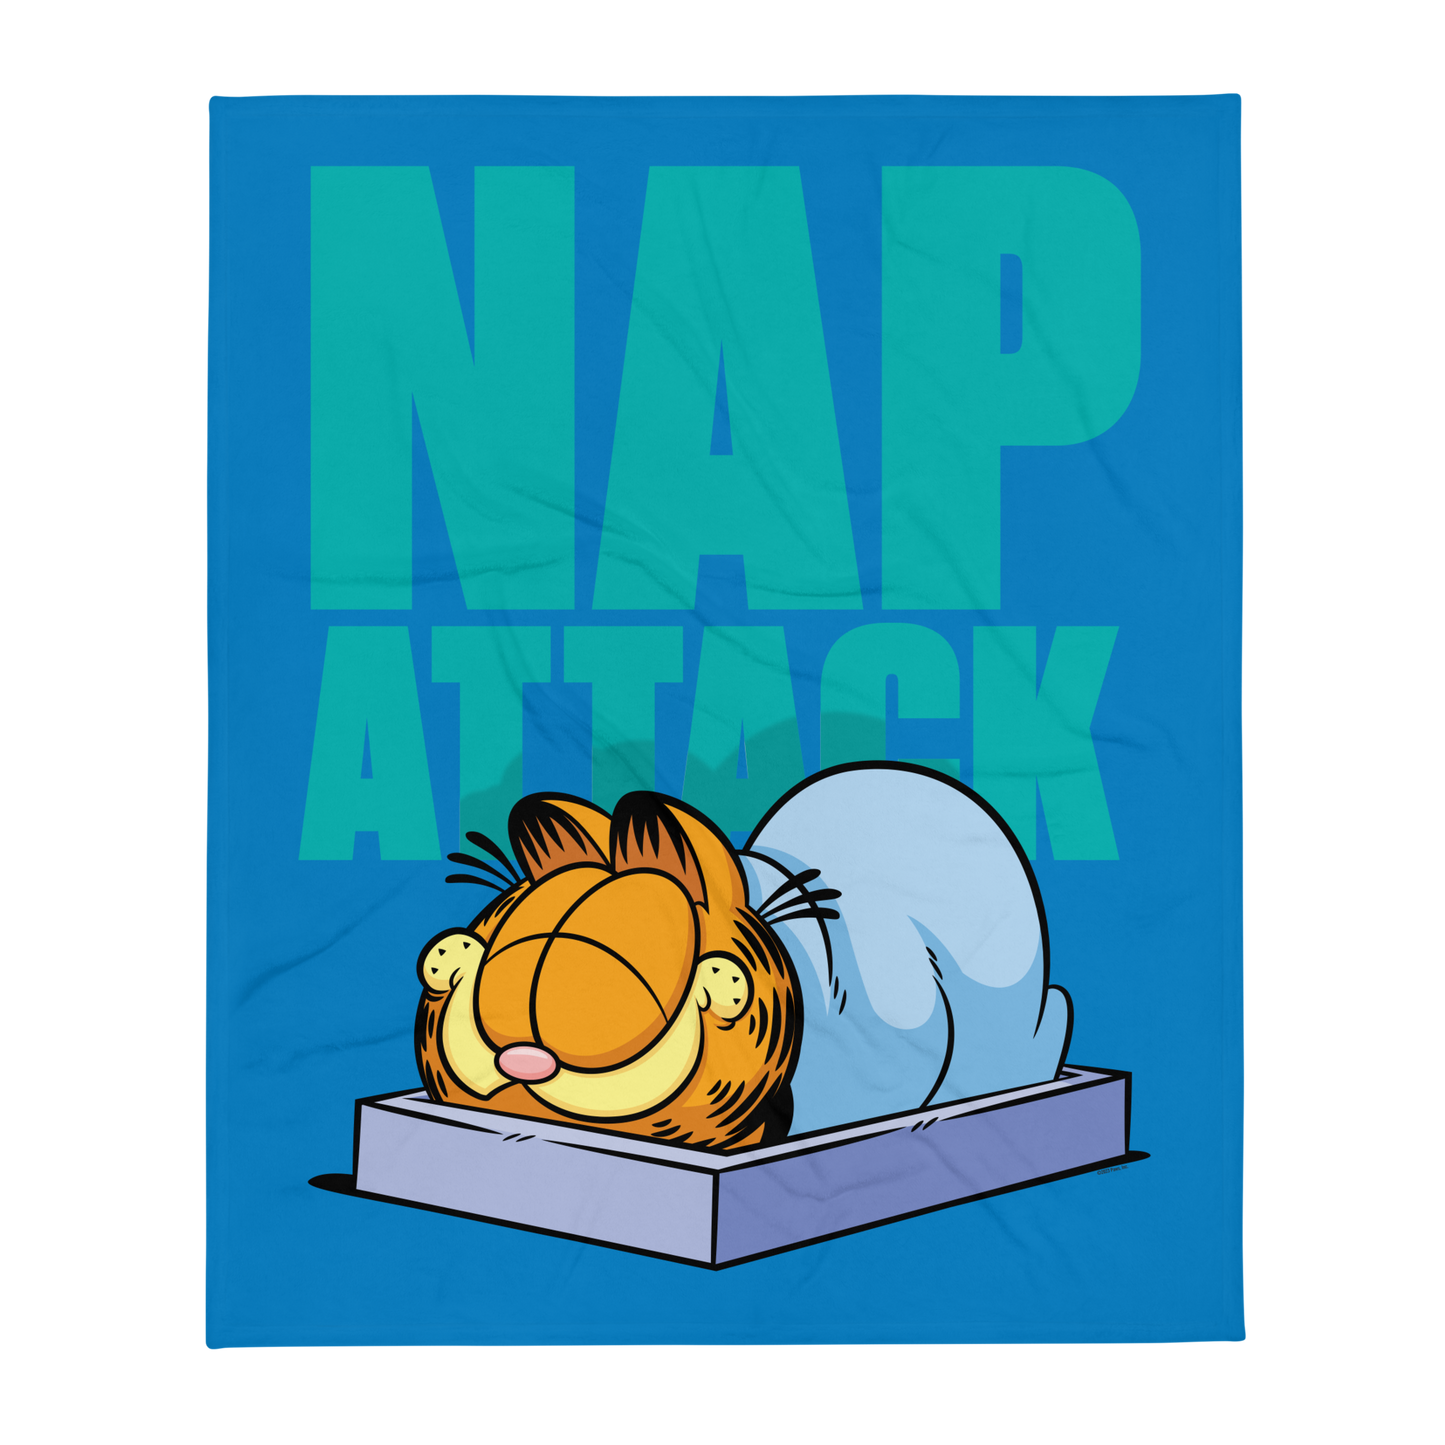 Garfield Nap Attack Throw Blanket